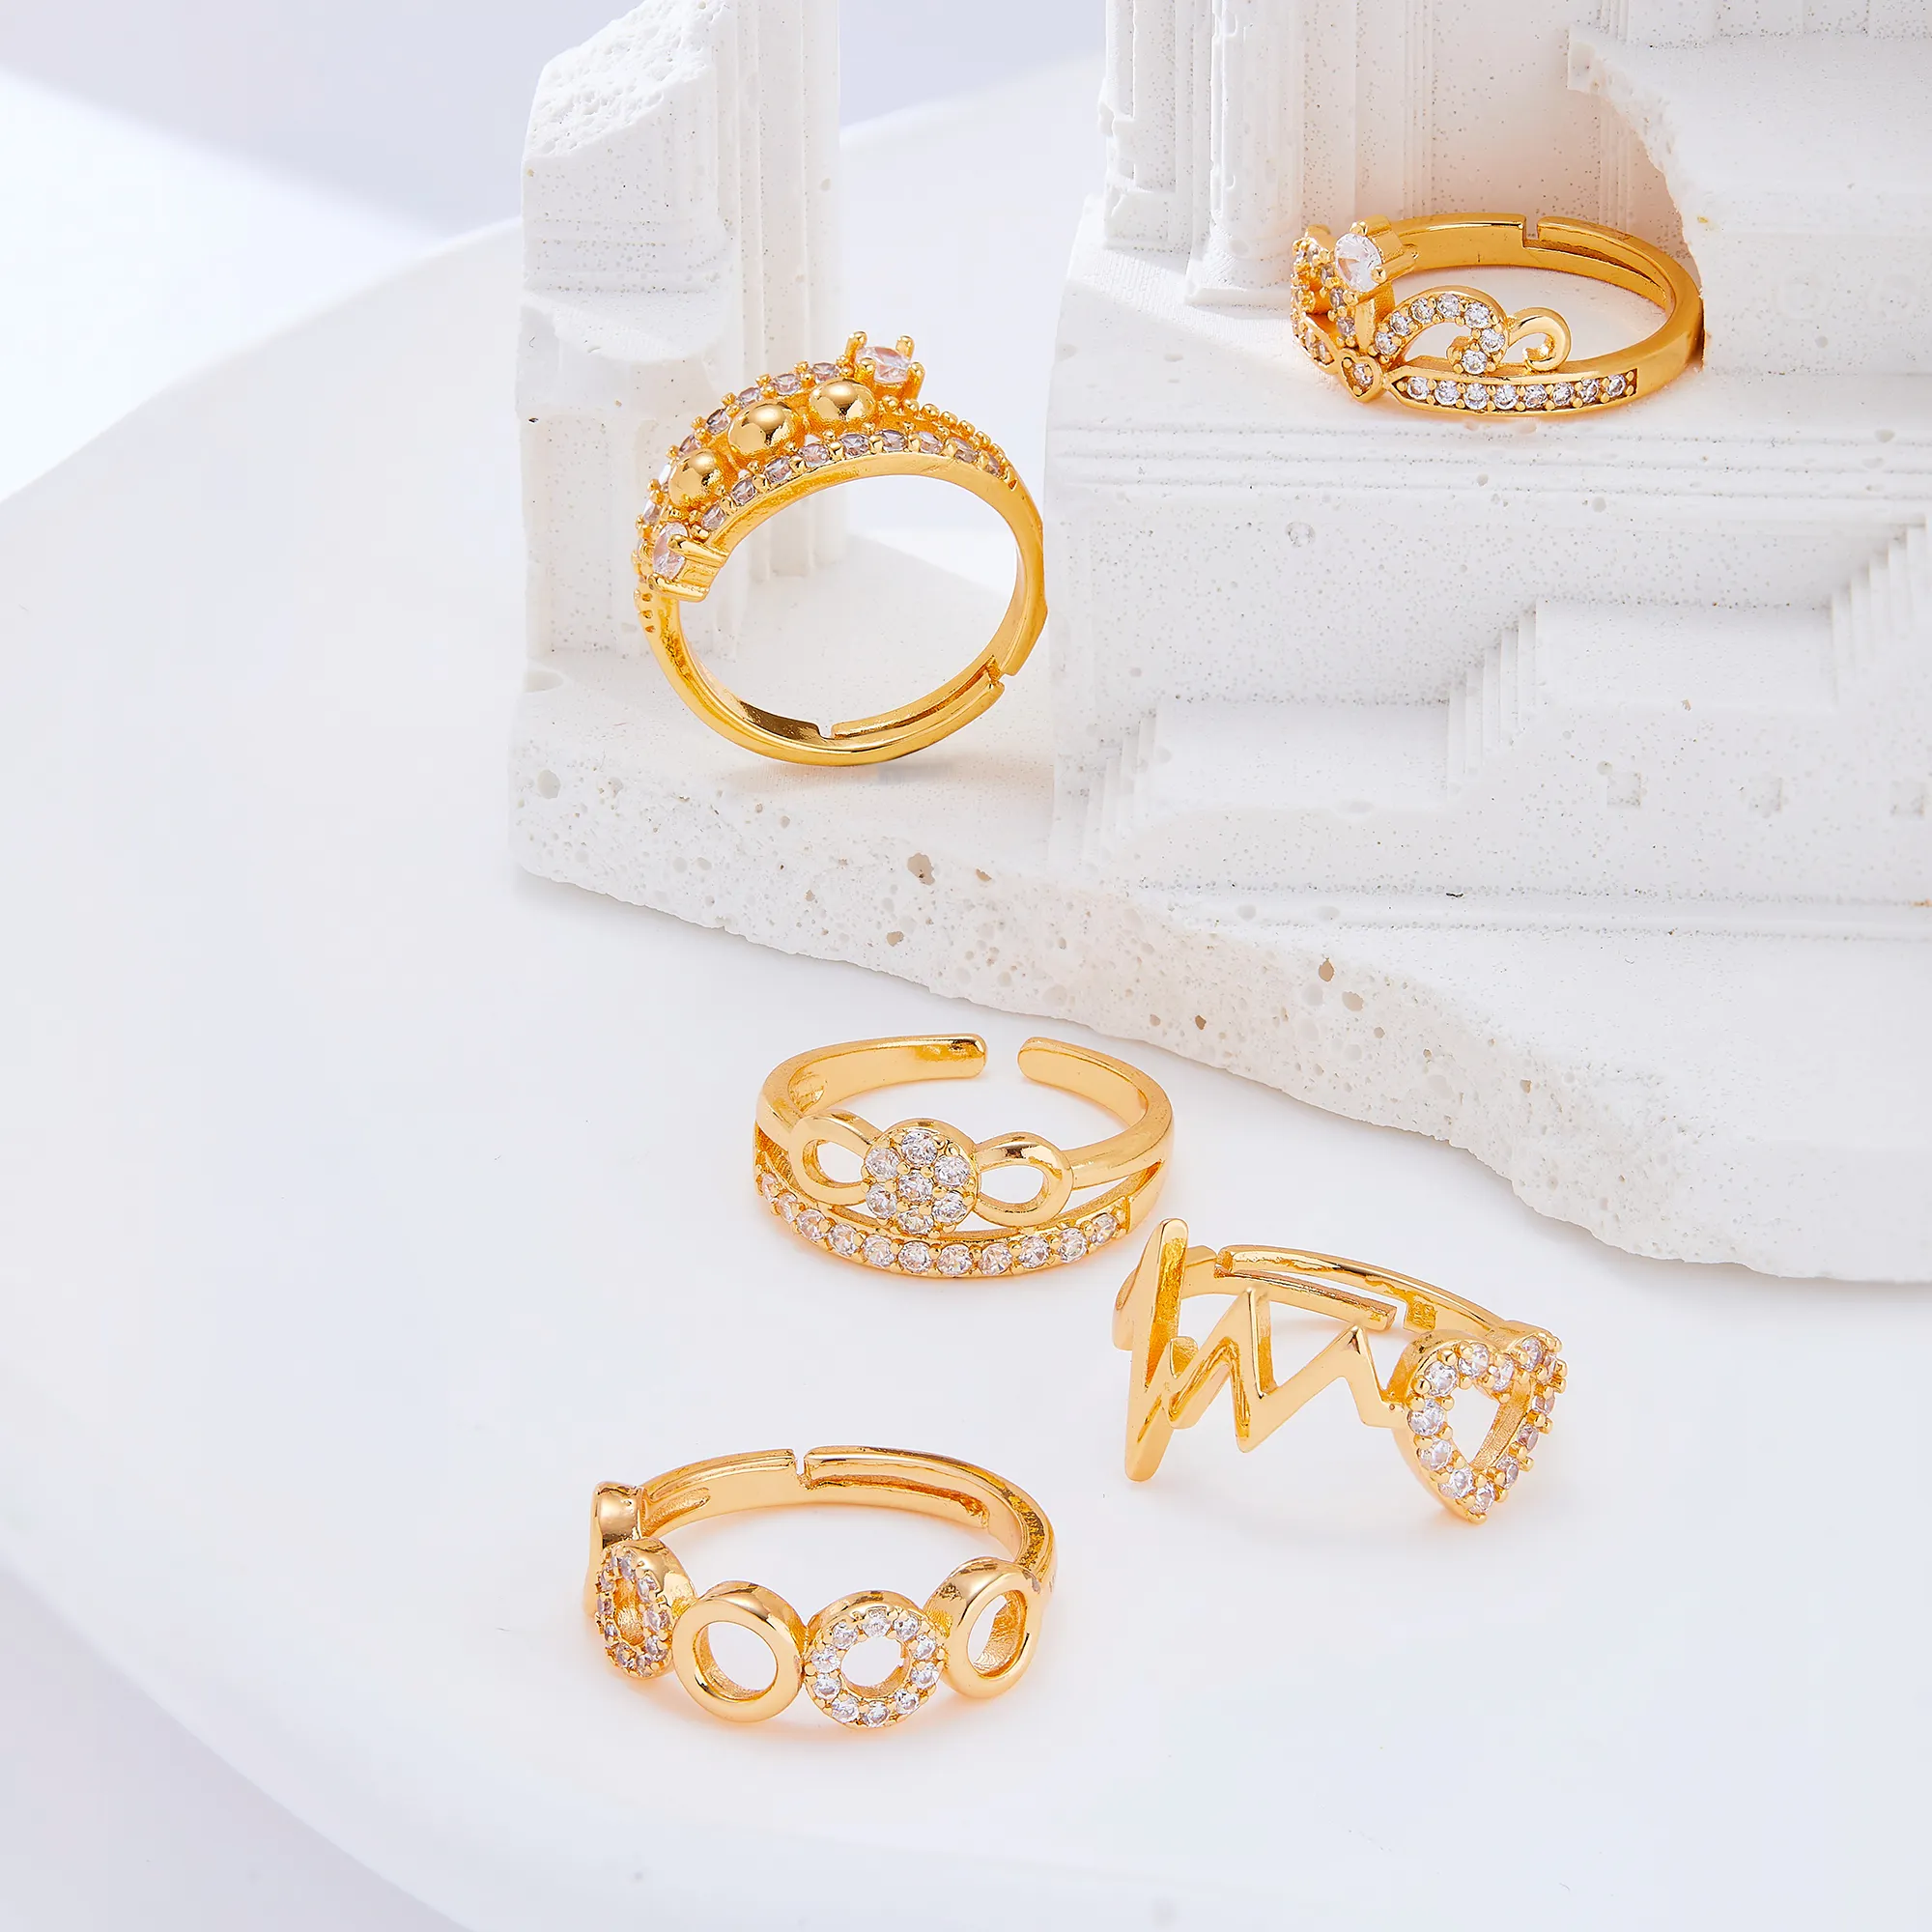 Vrouwen Mode Sieraden Goedkope Bruiloft Verloving Nieuwe Trendy Ring Set Diamanten 18K Gouden Ringen